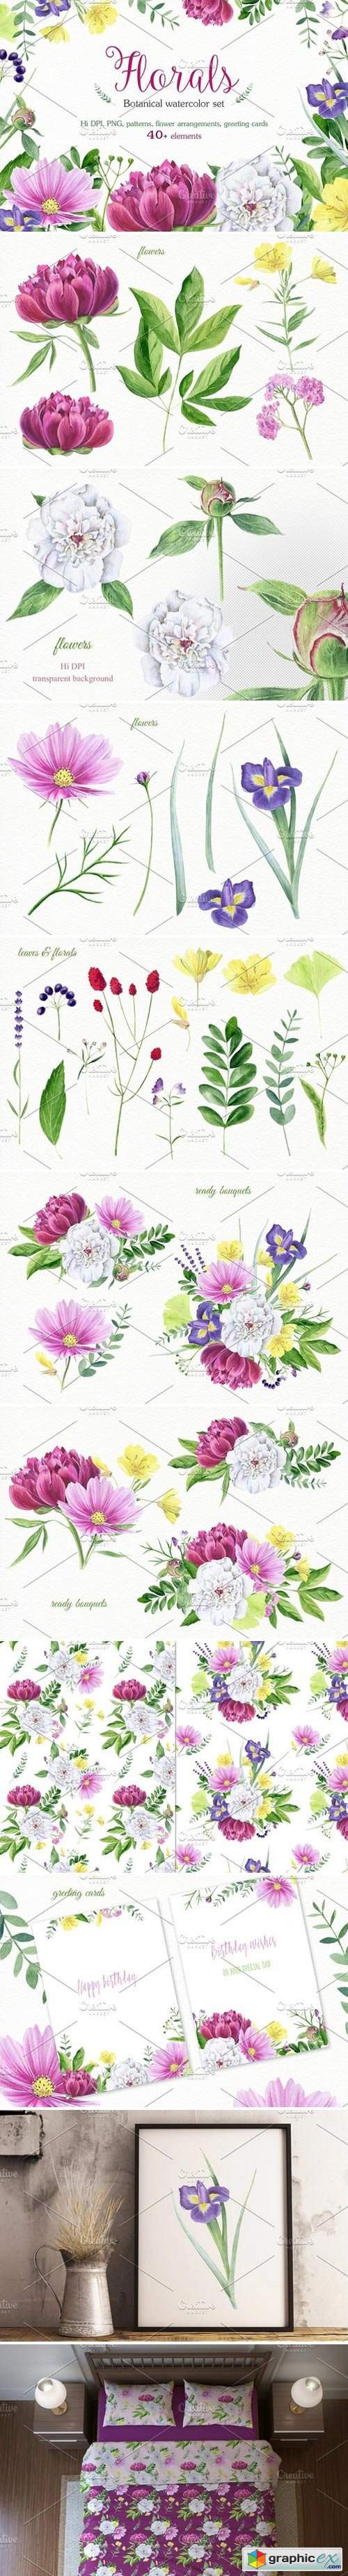 Florals watercolor set